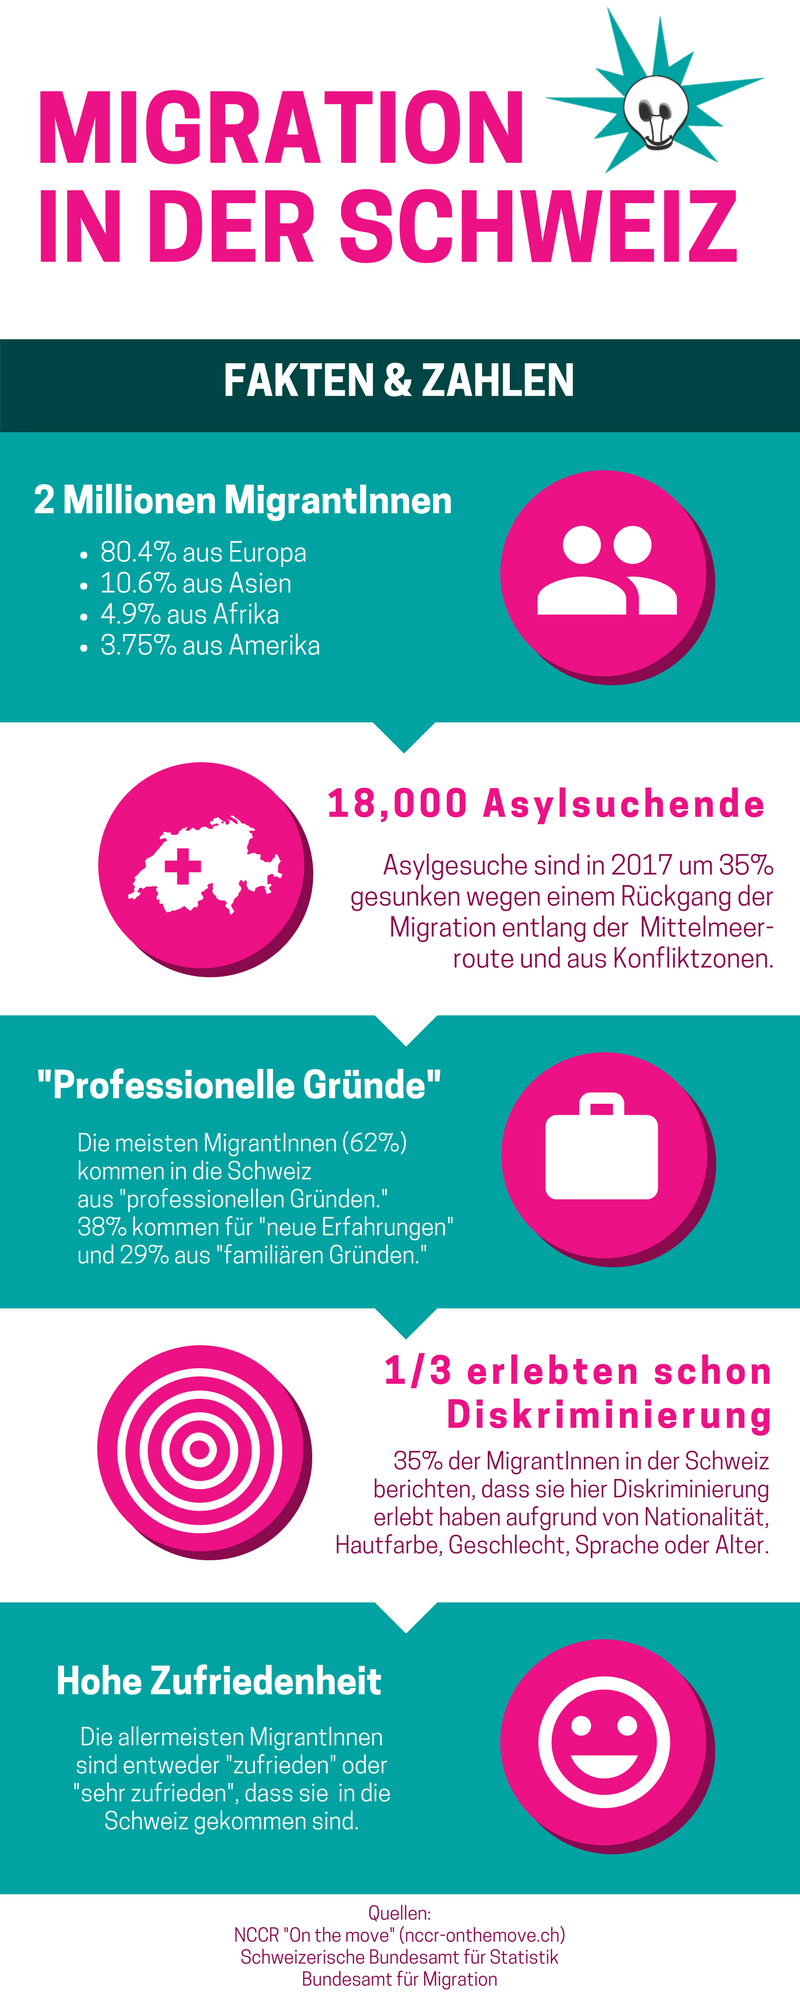 Migration in der Schweiz: Zahlen und Fakten